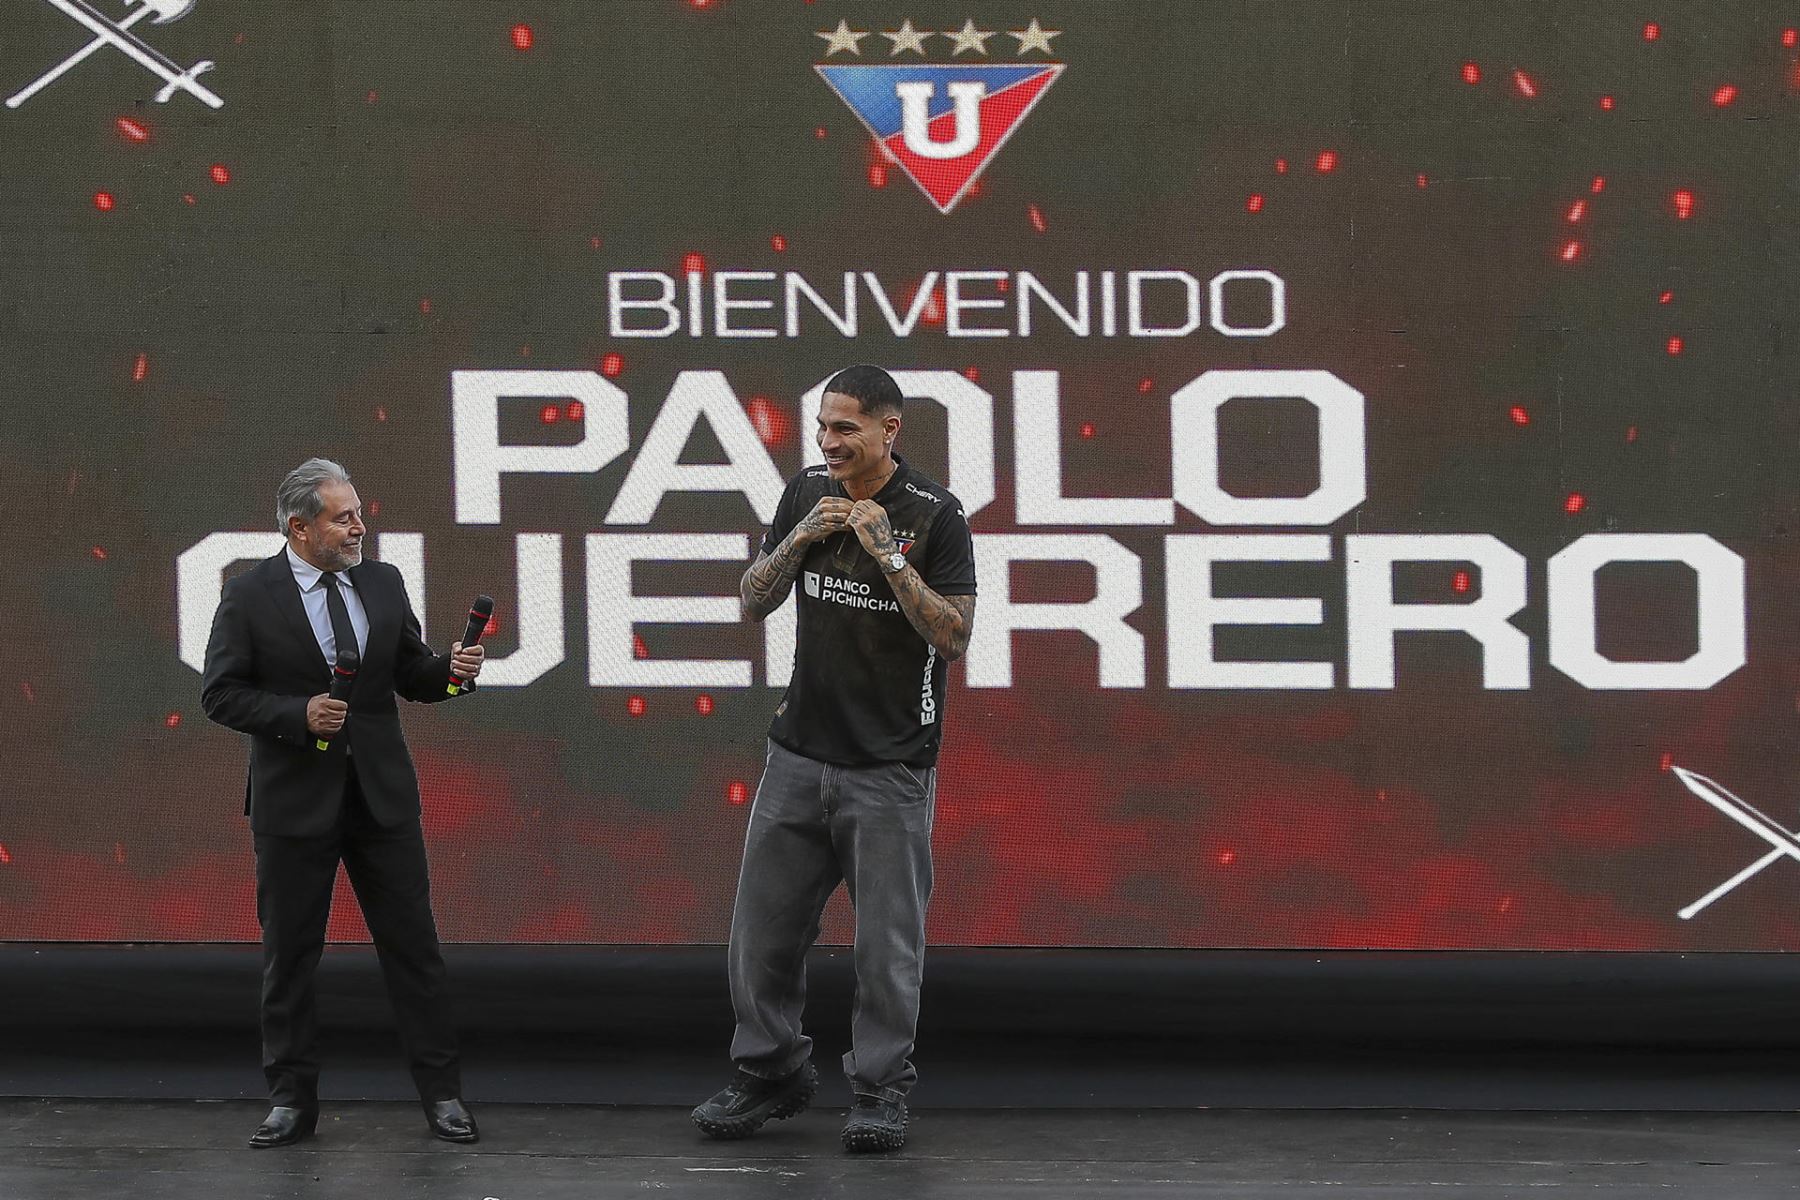 El jugador de fútbol peruano Paolo Guerrero fue presentado hoy en Quito como nuevo refuerzo de Liga Deportiva Universitaria, para la próxima etapa del campeonato nacional ecuatoriano. Foto: EFE